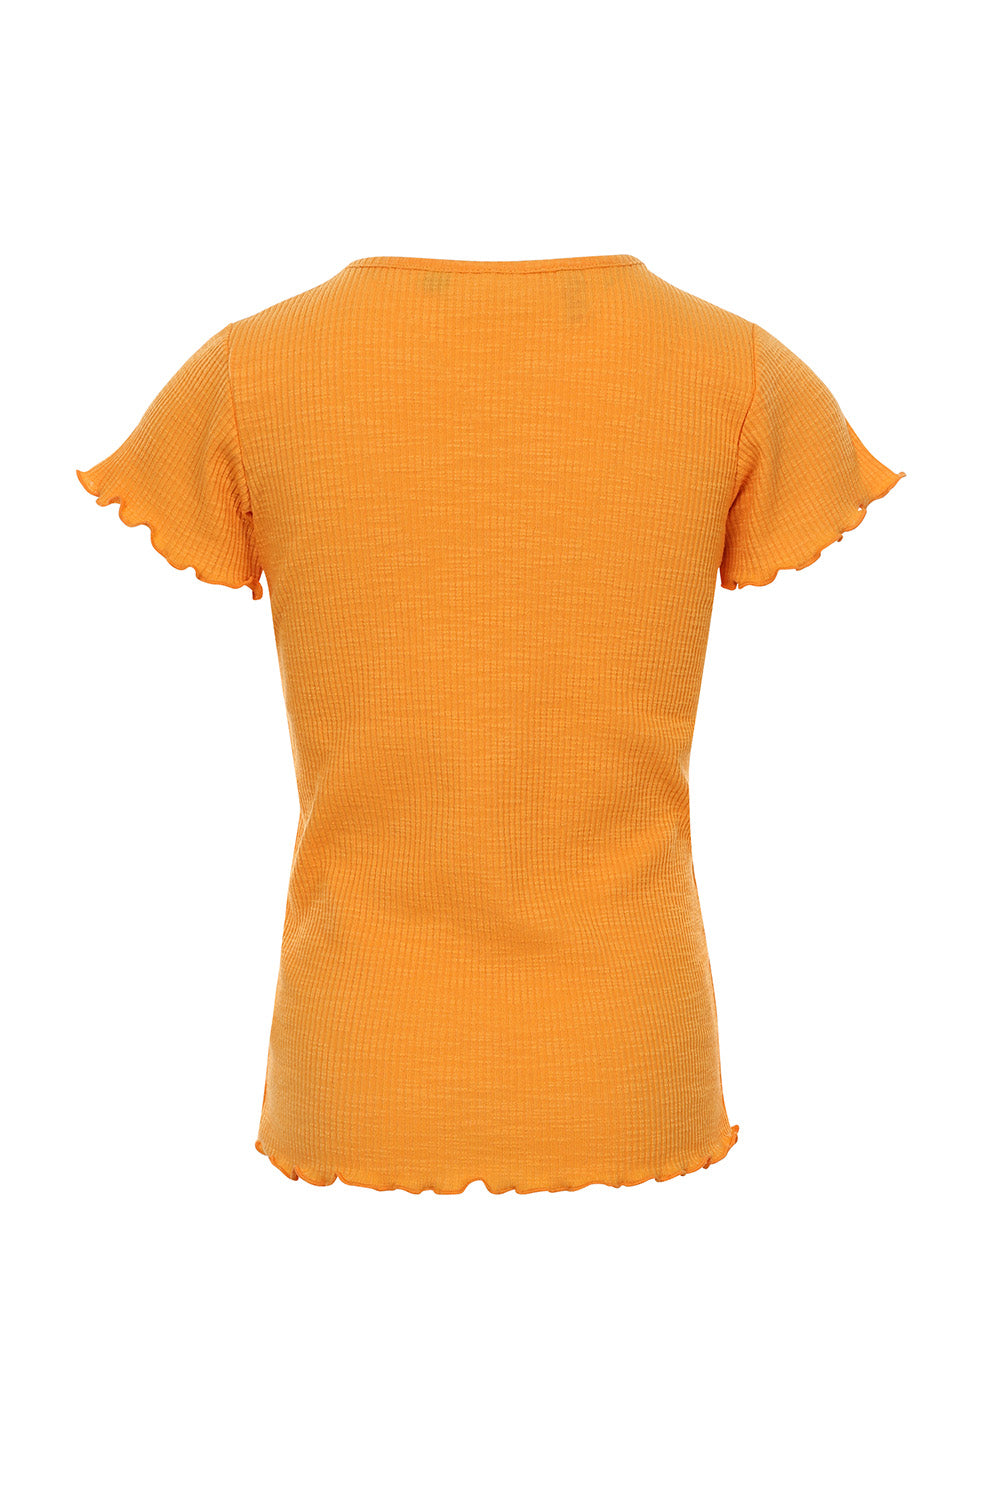 Meisjes Slubrib T-Shirt van LOOXS Little in de kleur Orange in maat 128.